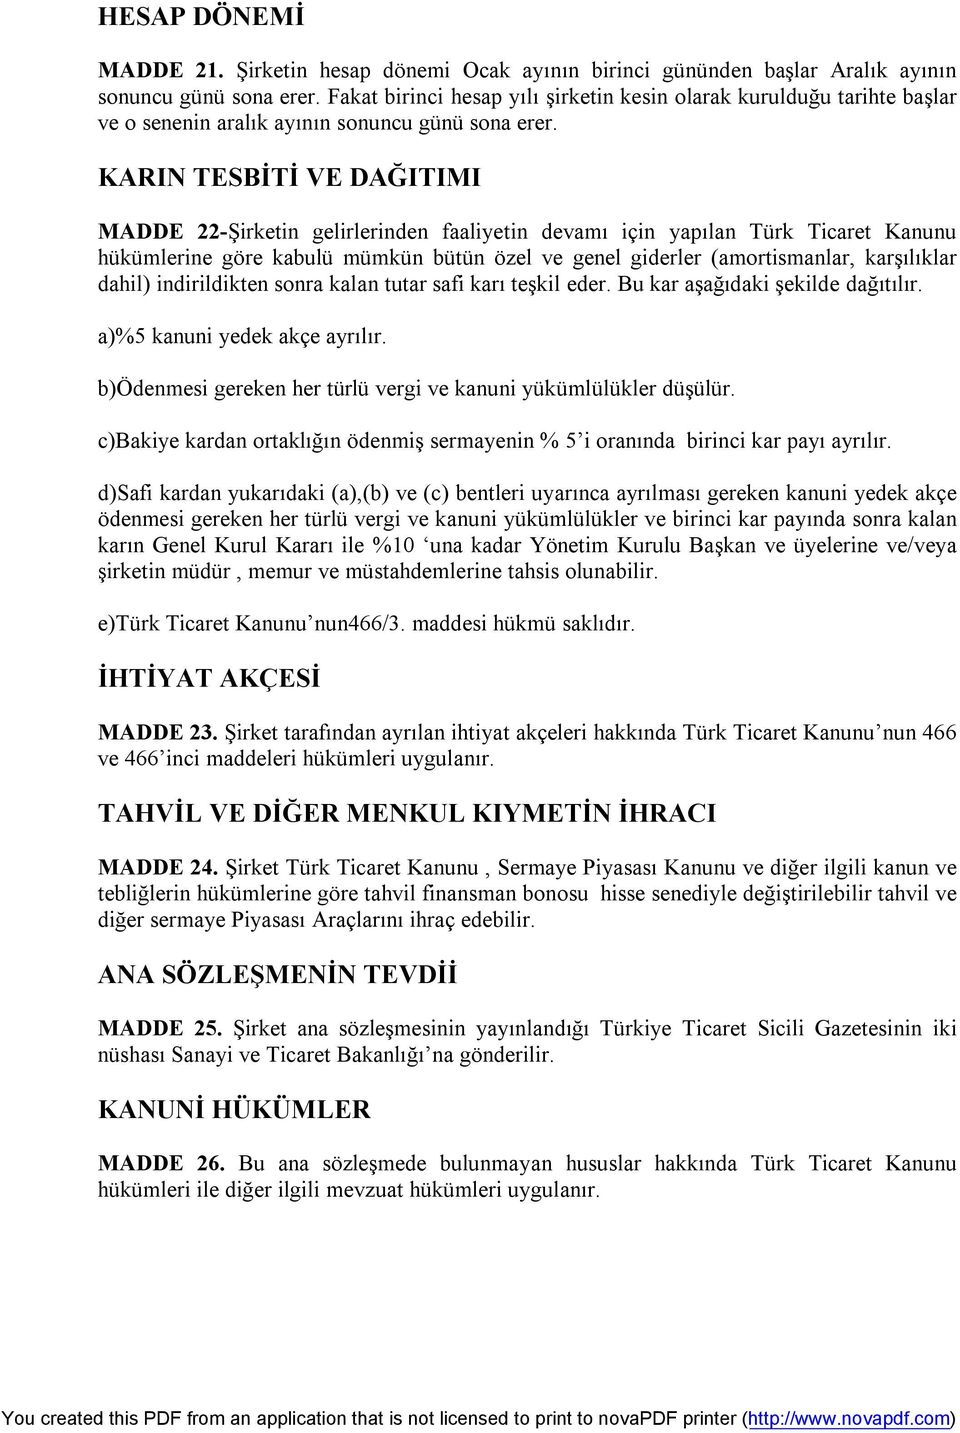 KARIN TESBİTİ VE DAĞITIMI MADDE 22-Şirketin gelirlerinden faaliyetin devamı için yapılan Türk Ticaret Kanunu hükümlerine göre kabulü mümkün bütün özel ve genel giderler (amortismanlar, karşılıklar